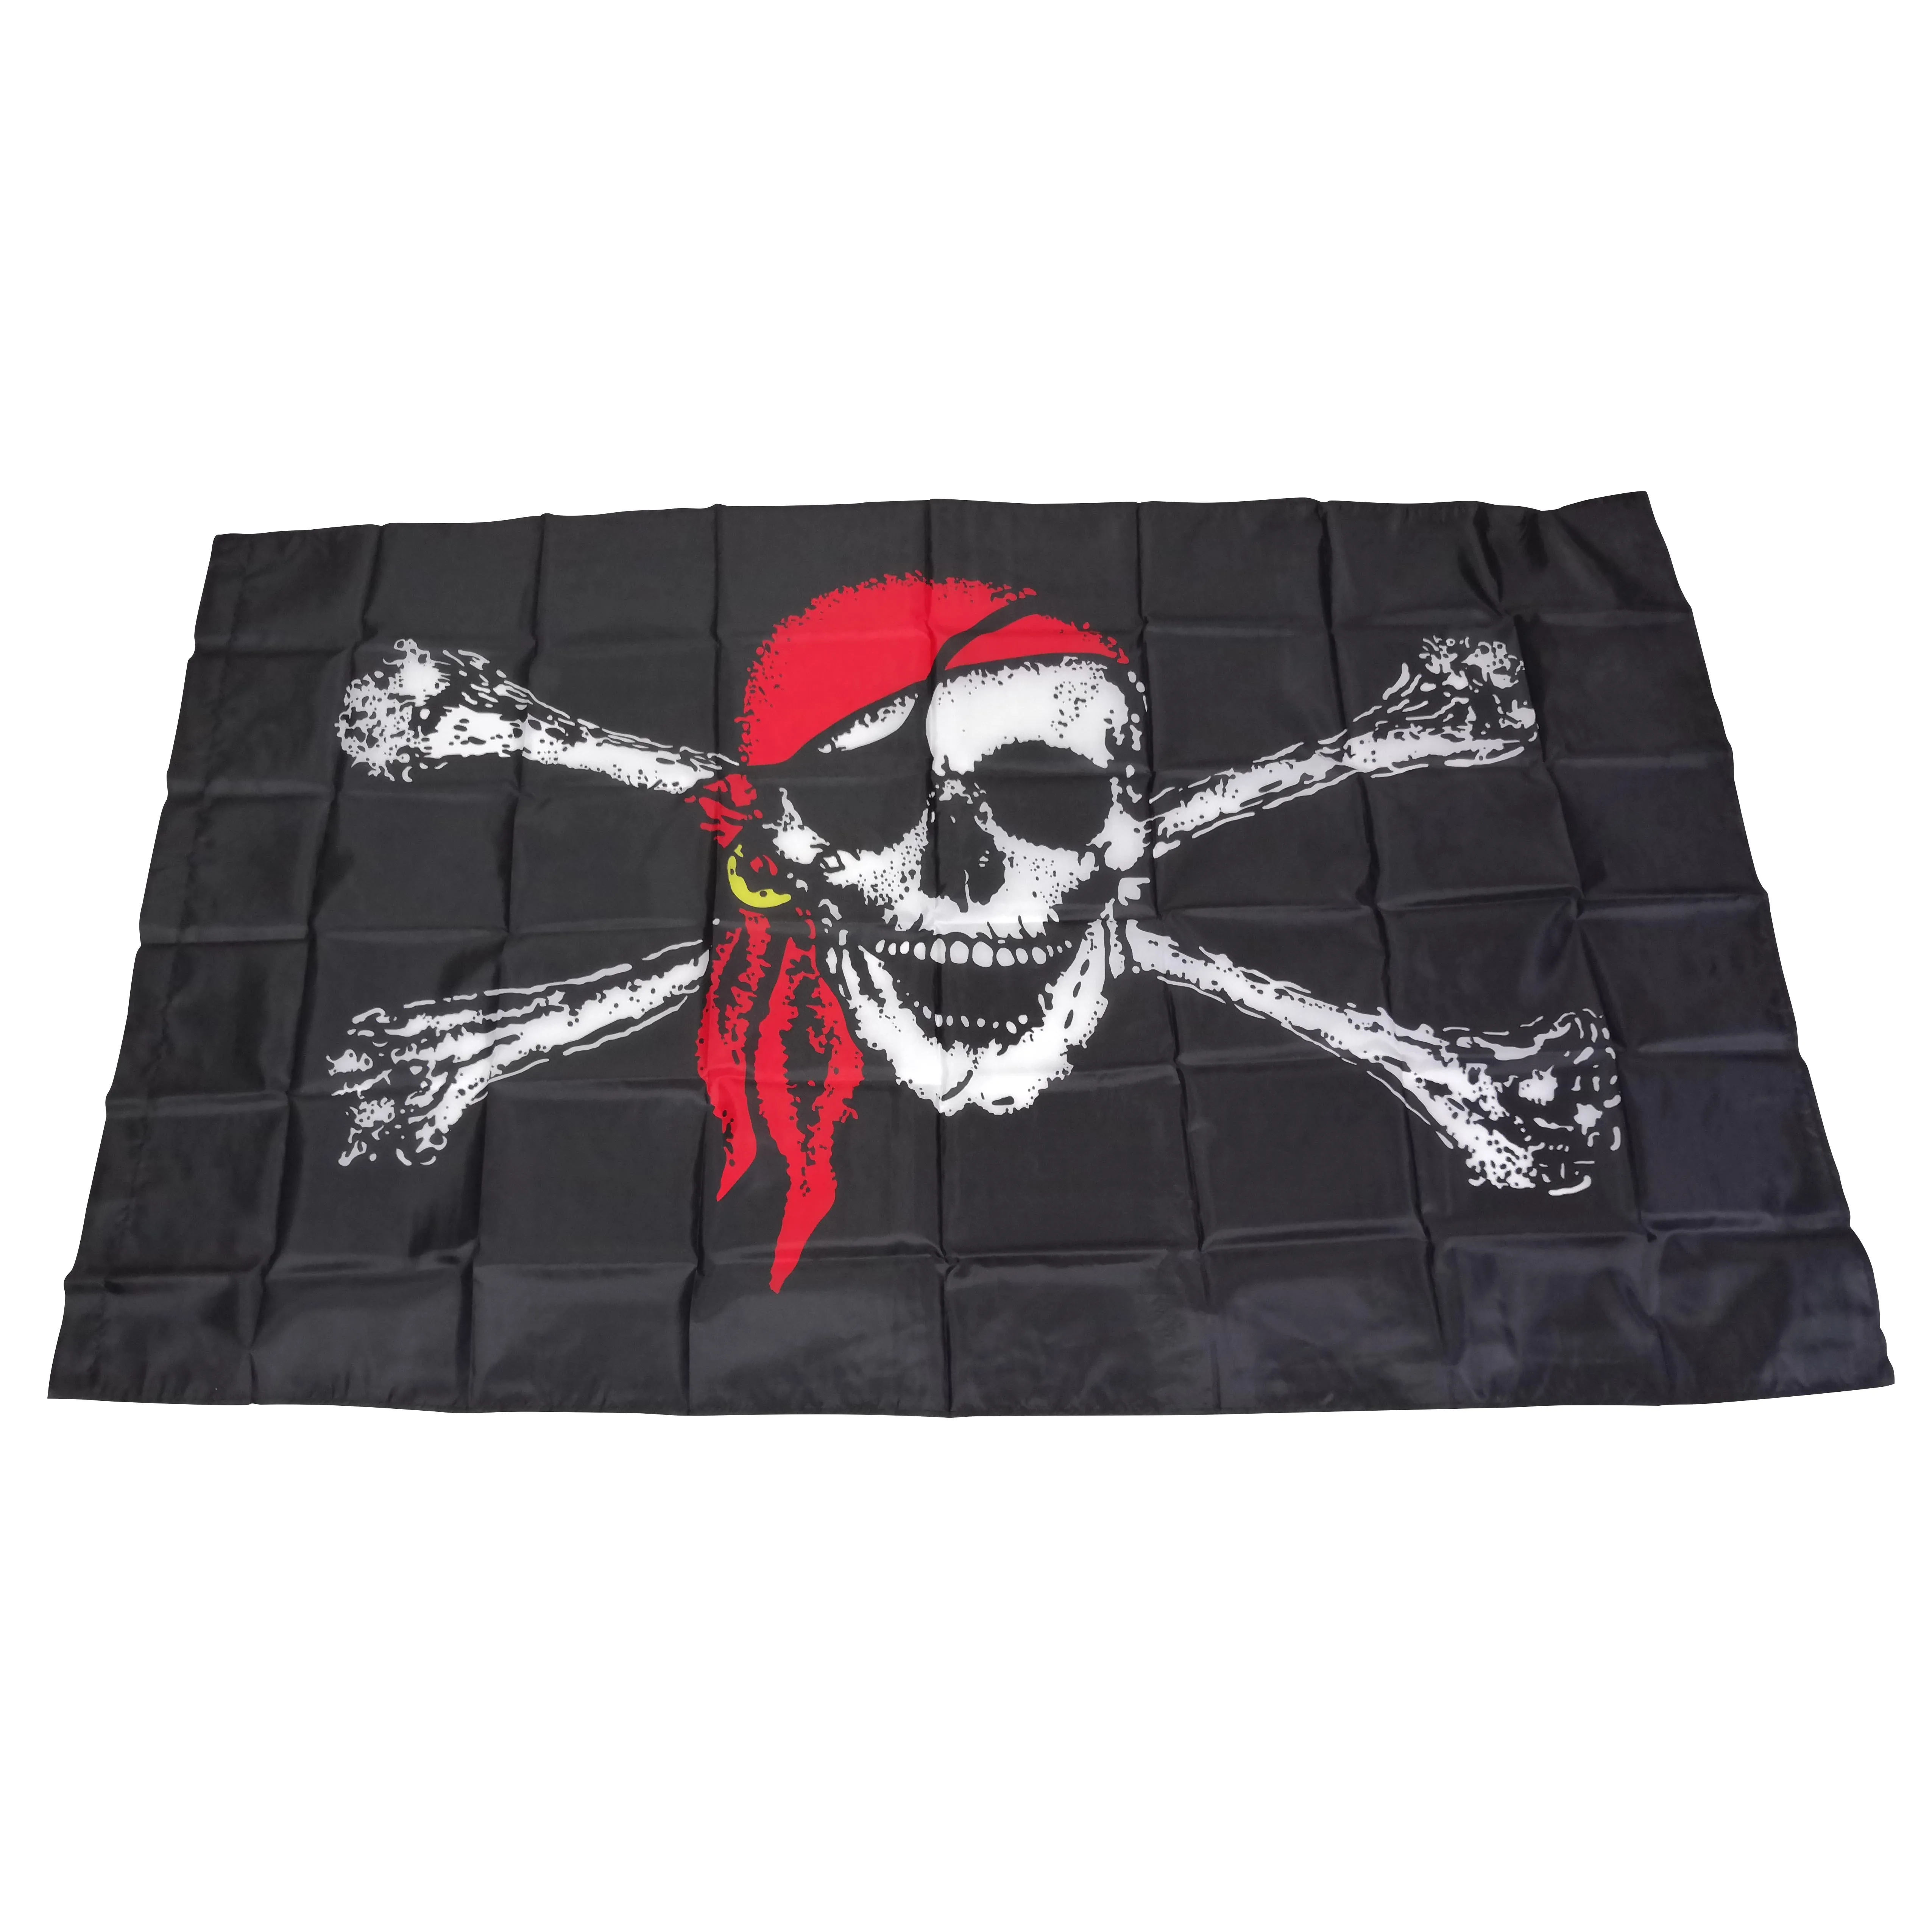 150x90cm 3X5FT banderas piratas personalizadas Banner de alta calidad al aire libre interior promoción tela de poliéster, envío gratis, triangulación de envíos